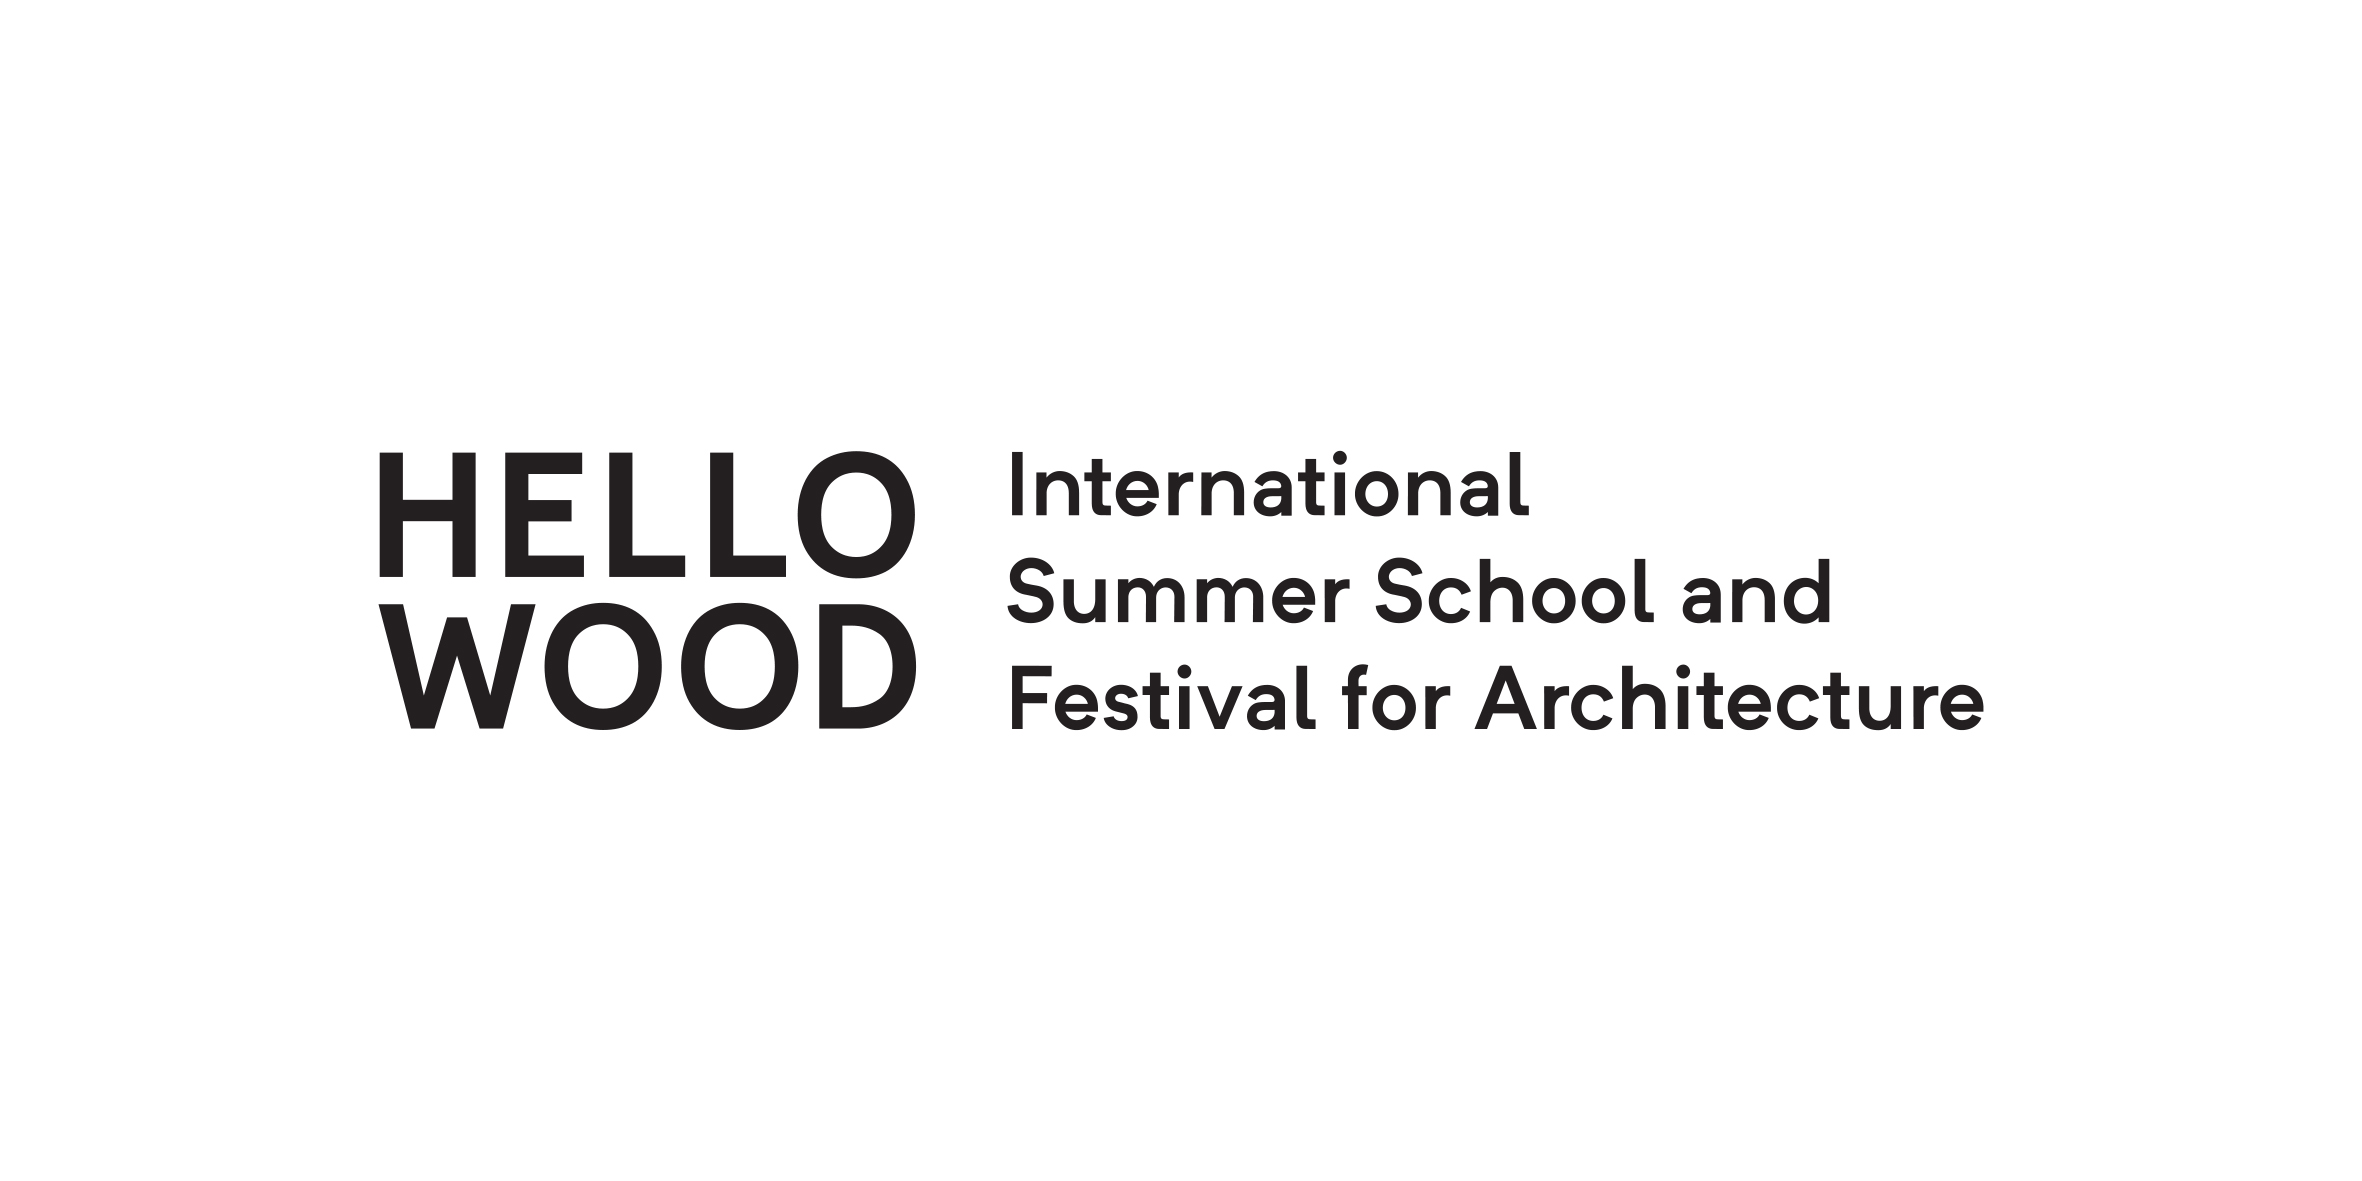 Hello Wood Nemzetközi Építészeti Alkotófesztivál